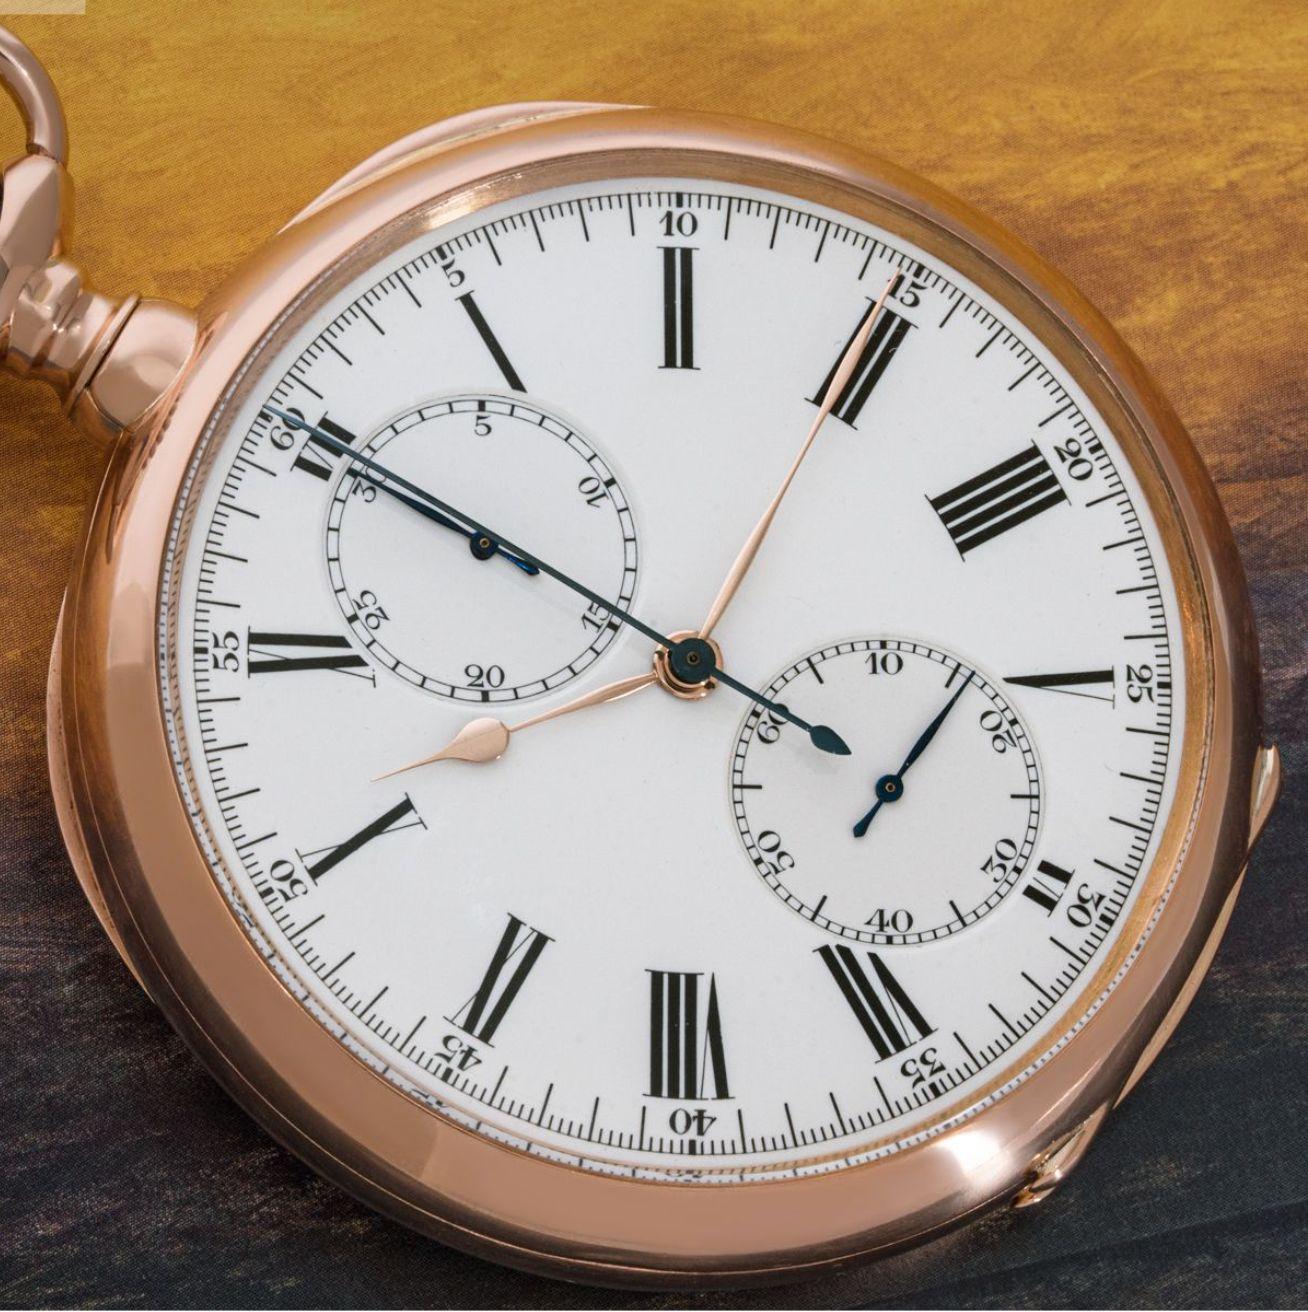 Patek Philippe Gondolo. Rare grande montre de poche chronographe à levier sans clé en or rose des années 1920, avec sa boîte d'origine.

Cadran : Le superbe cadran en émail blanc avec des chiffres romains à l'extérieur de la piste des minutes avec